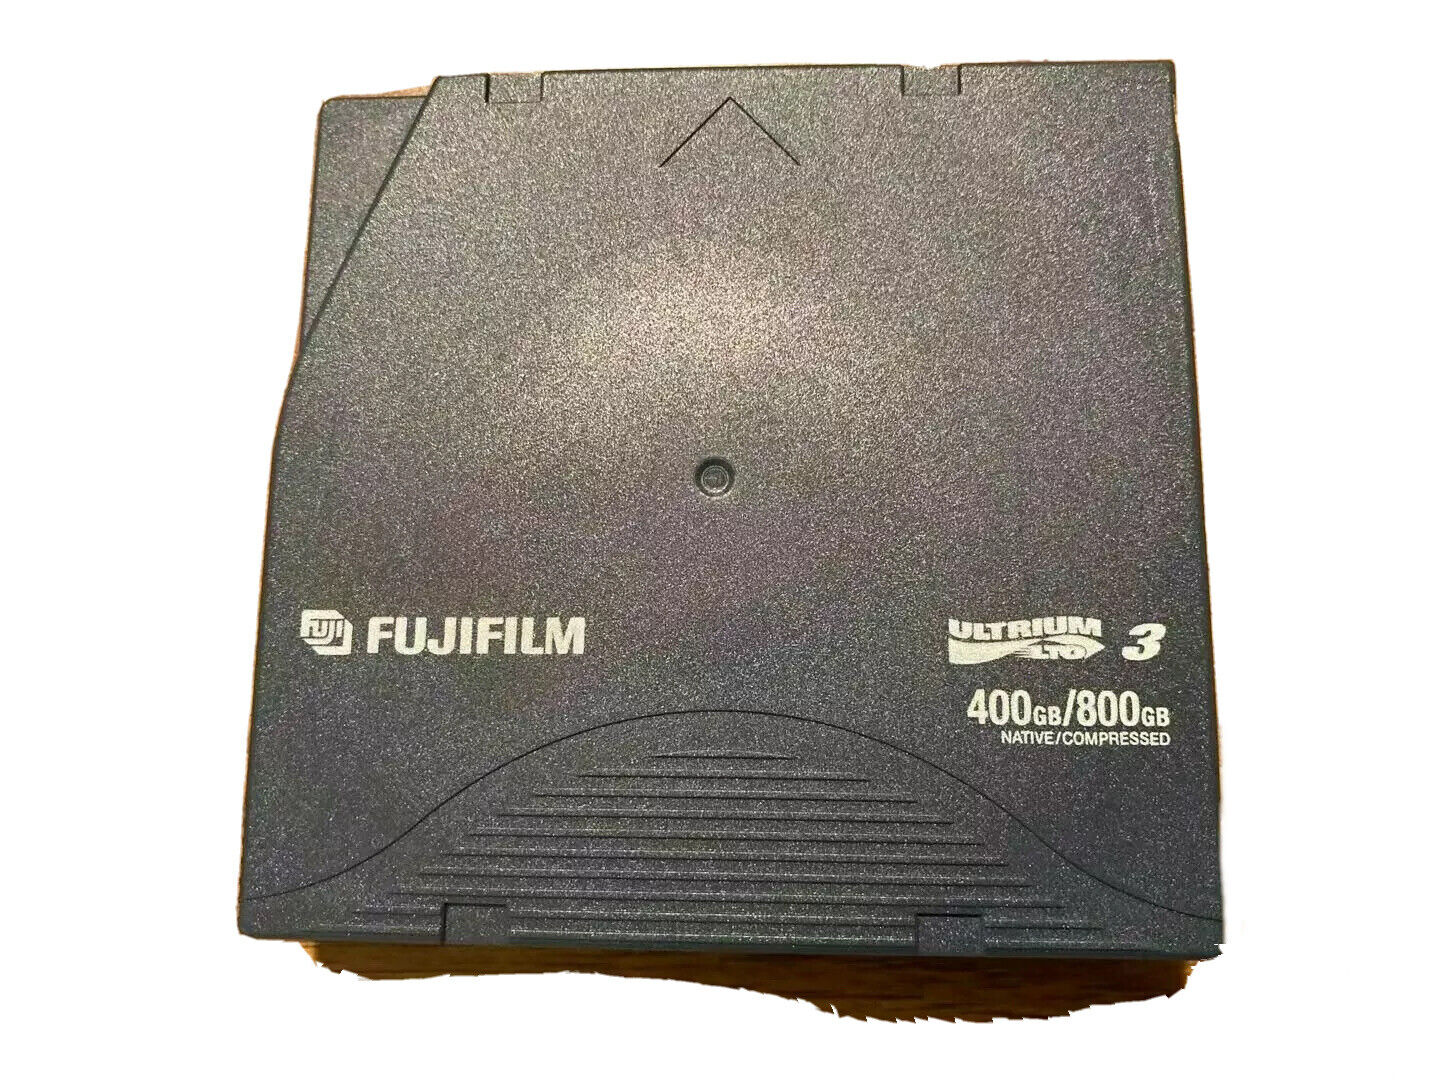  Fujifilm LTO Ultrium 3 Tape Drive 400GB/800GB